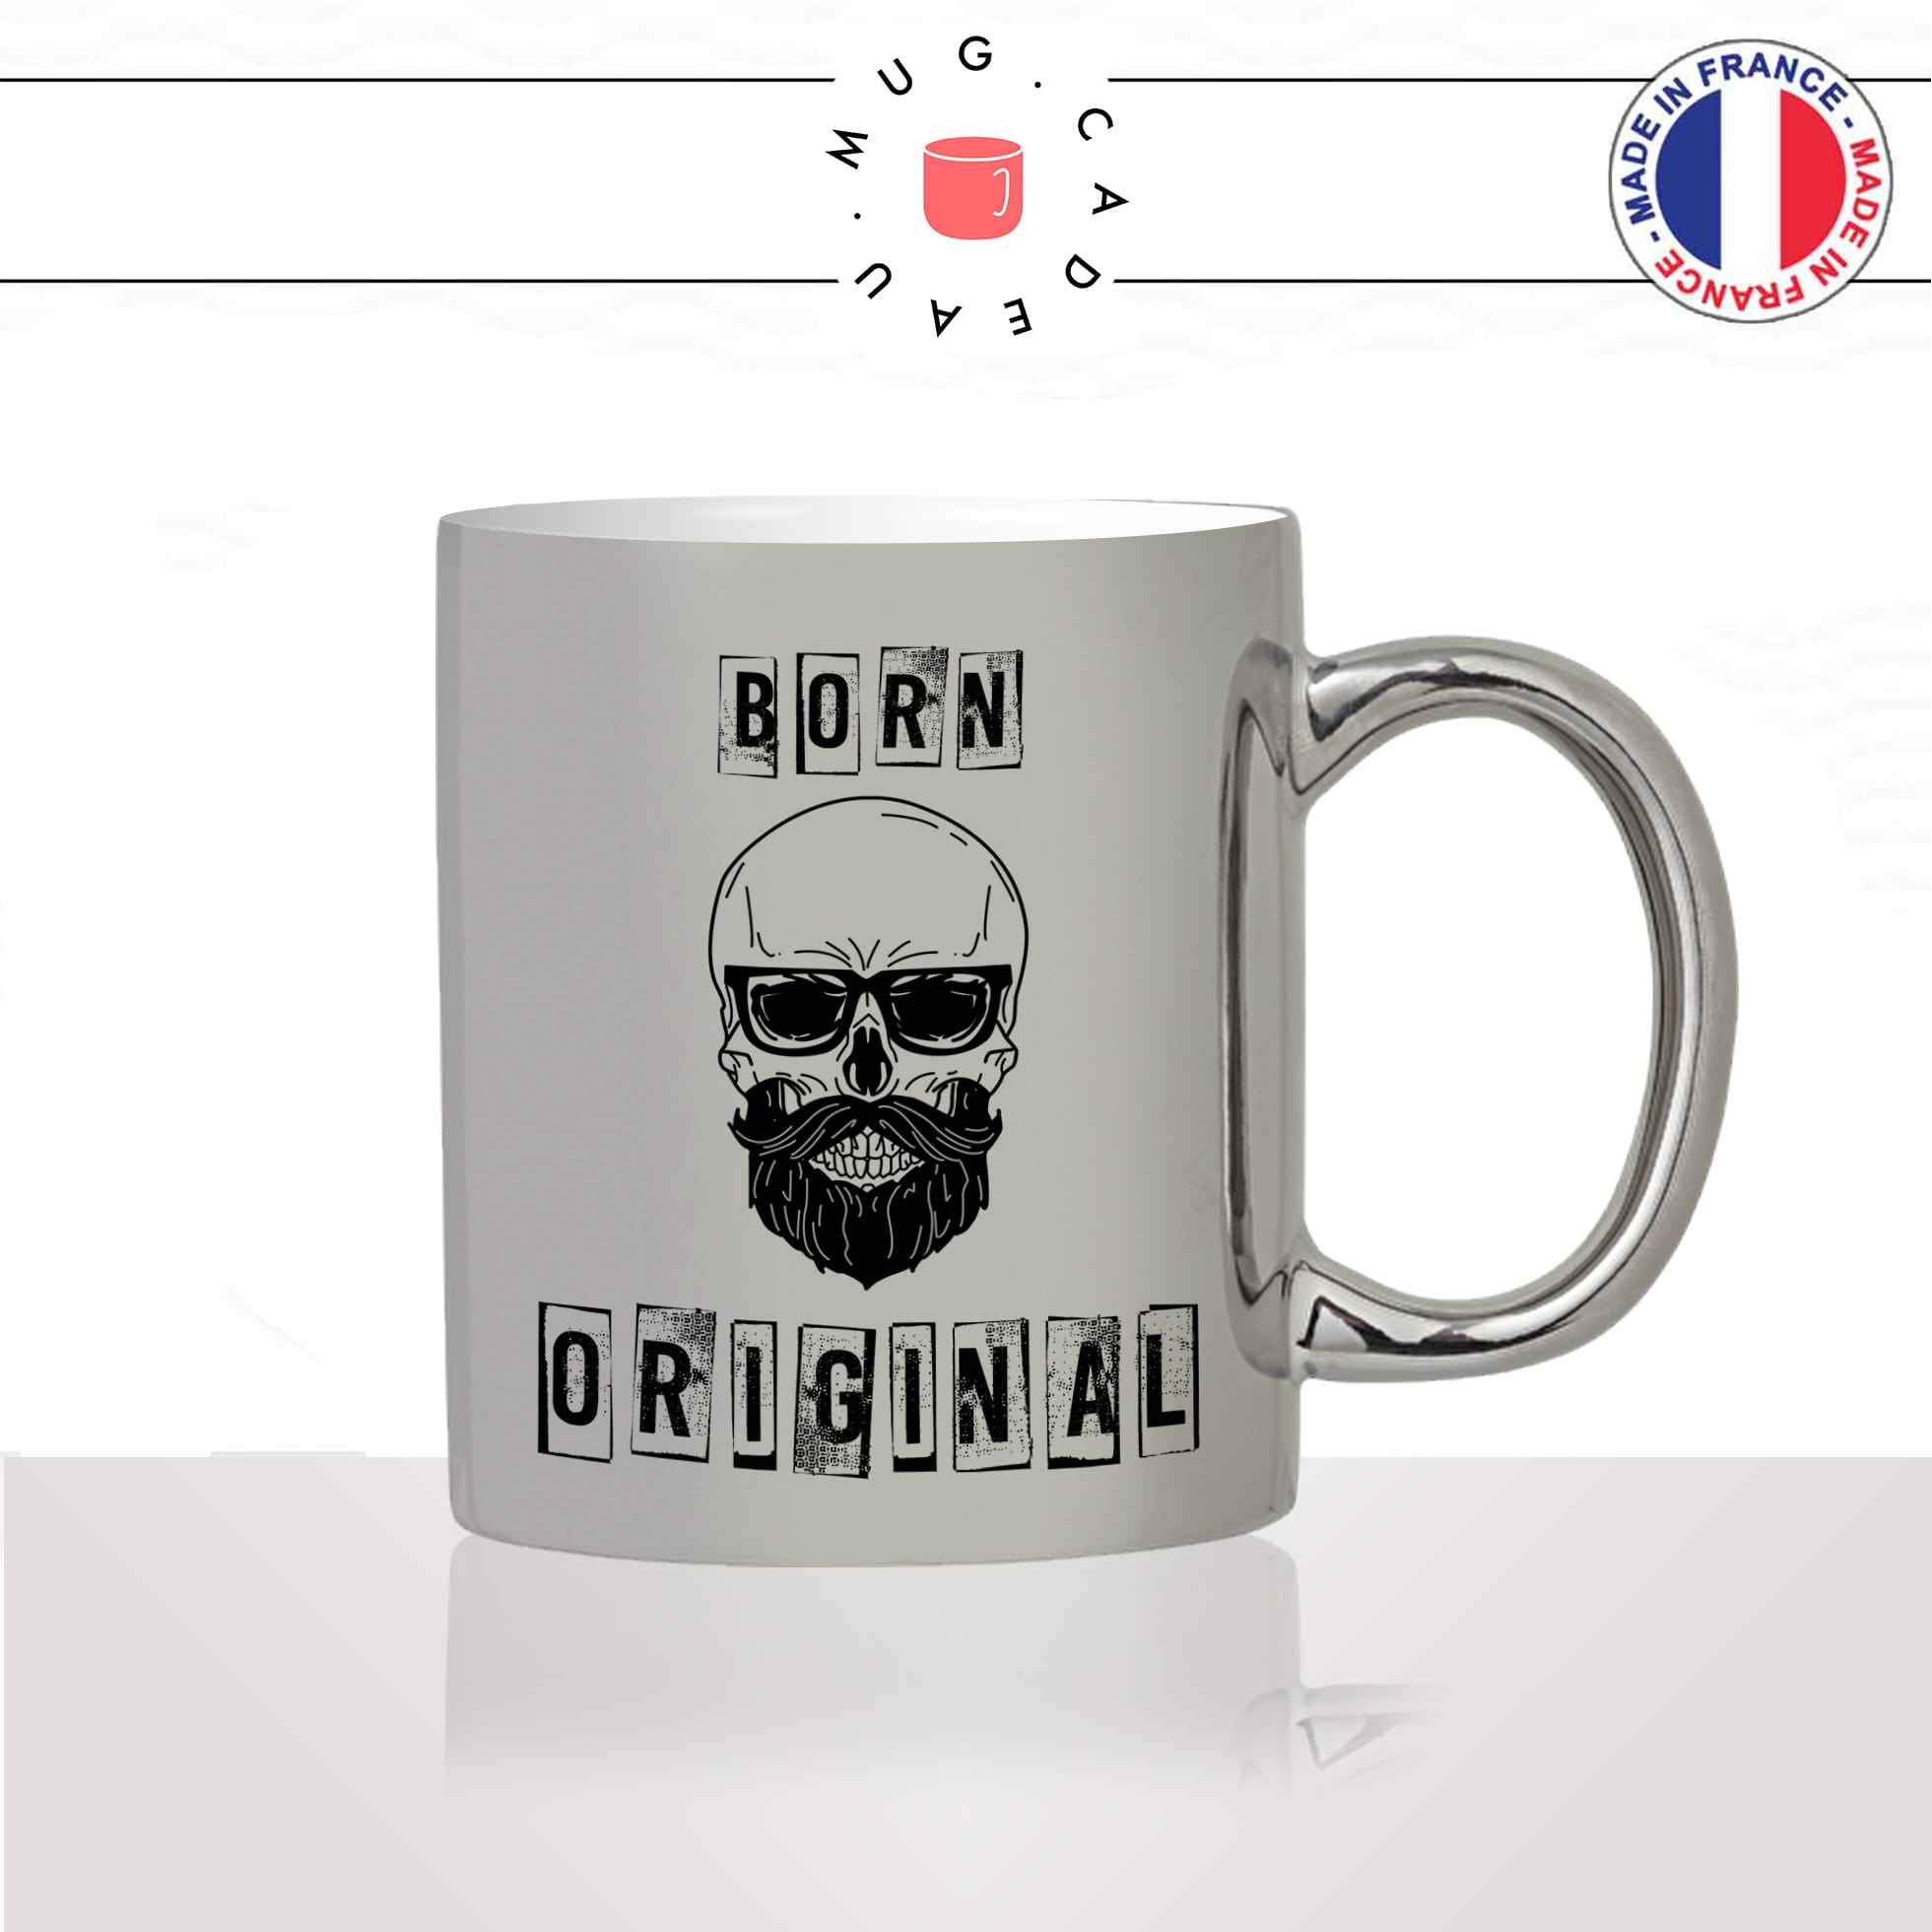 mug-tasse-argent-argenté-silver-homme-born-original-barbe-hipster-tete-de-mort-lunettes-de-soleil-mec-stylé-idée-cadeau-fun-cool-café-thé2-min